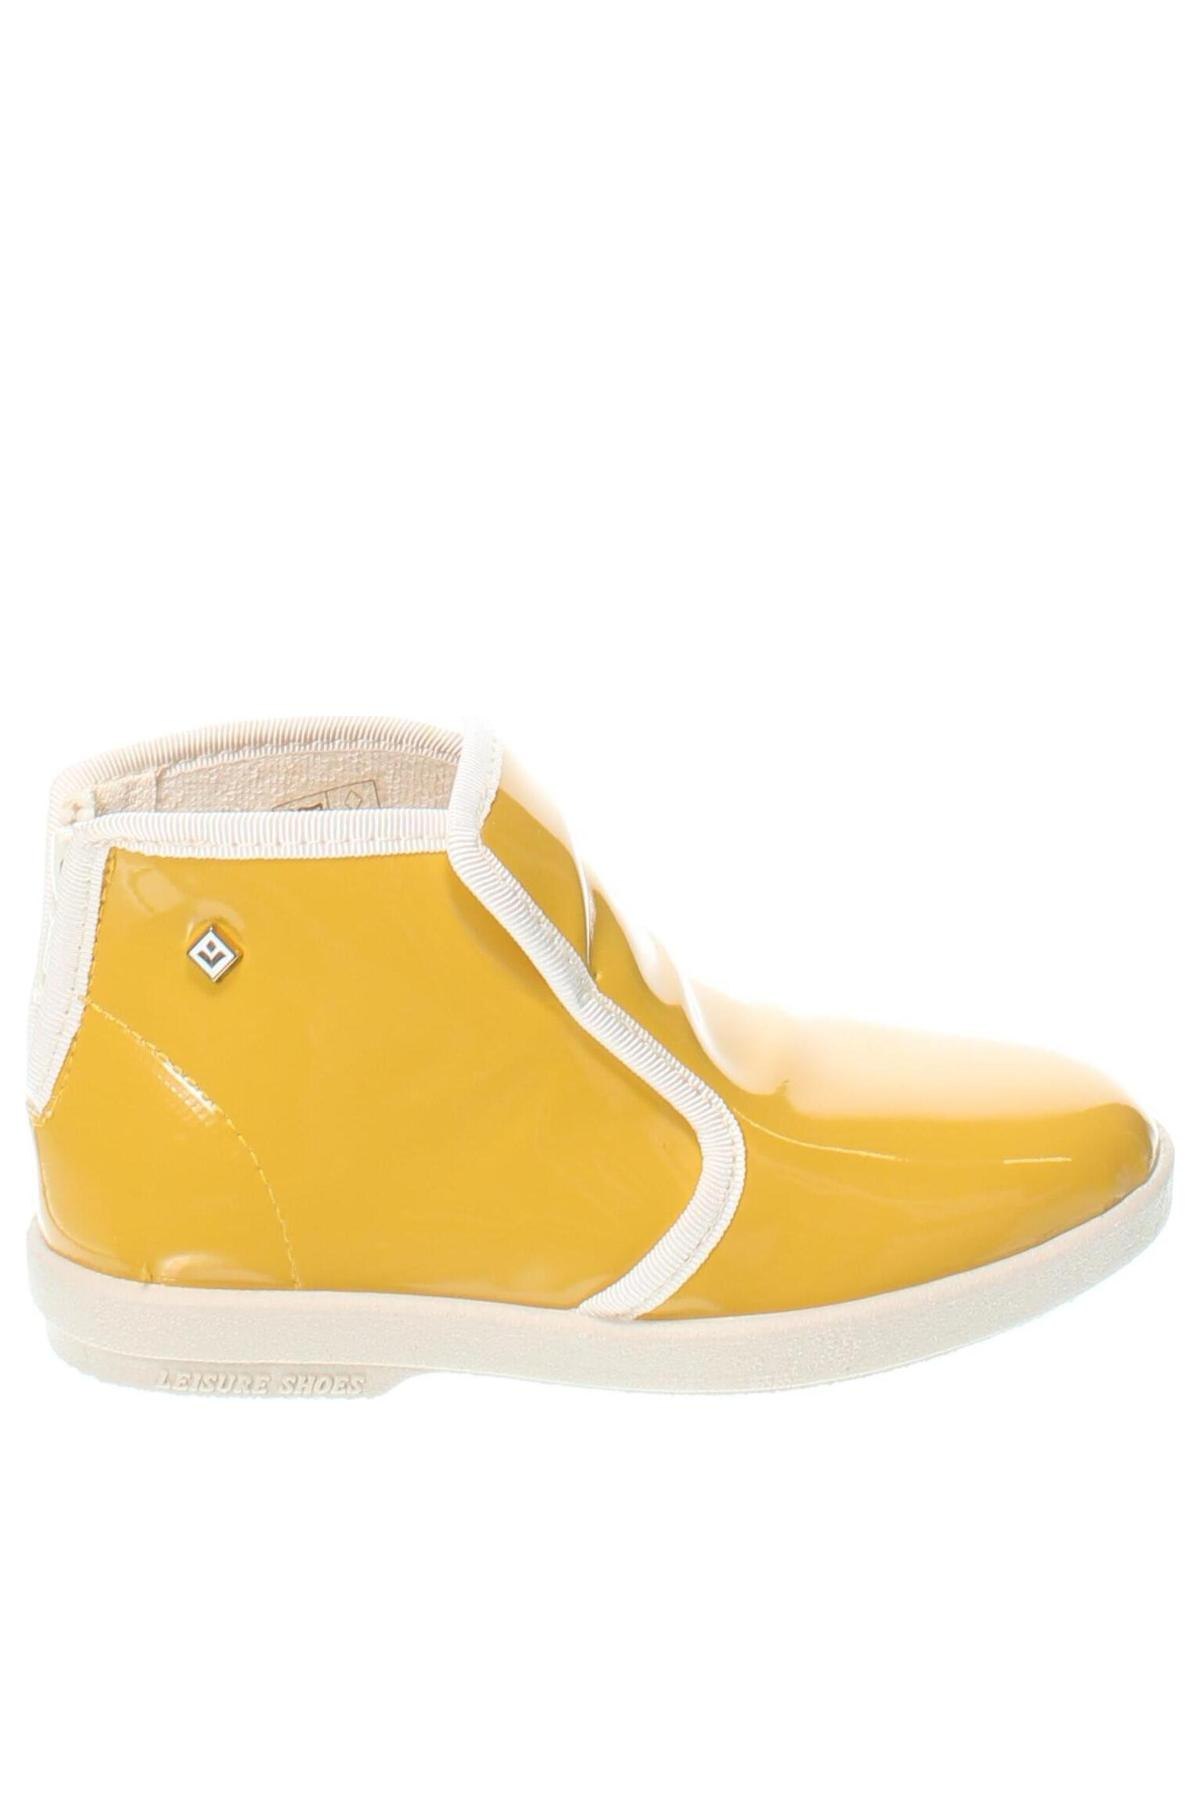 Παιδικά παπούτσια Rivieras, Μέγεθος 27, Χρώμα Κίτρινο, Τιμή 12,25 €